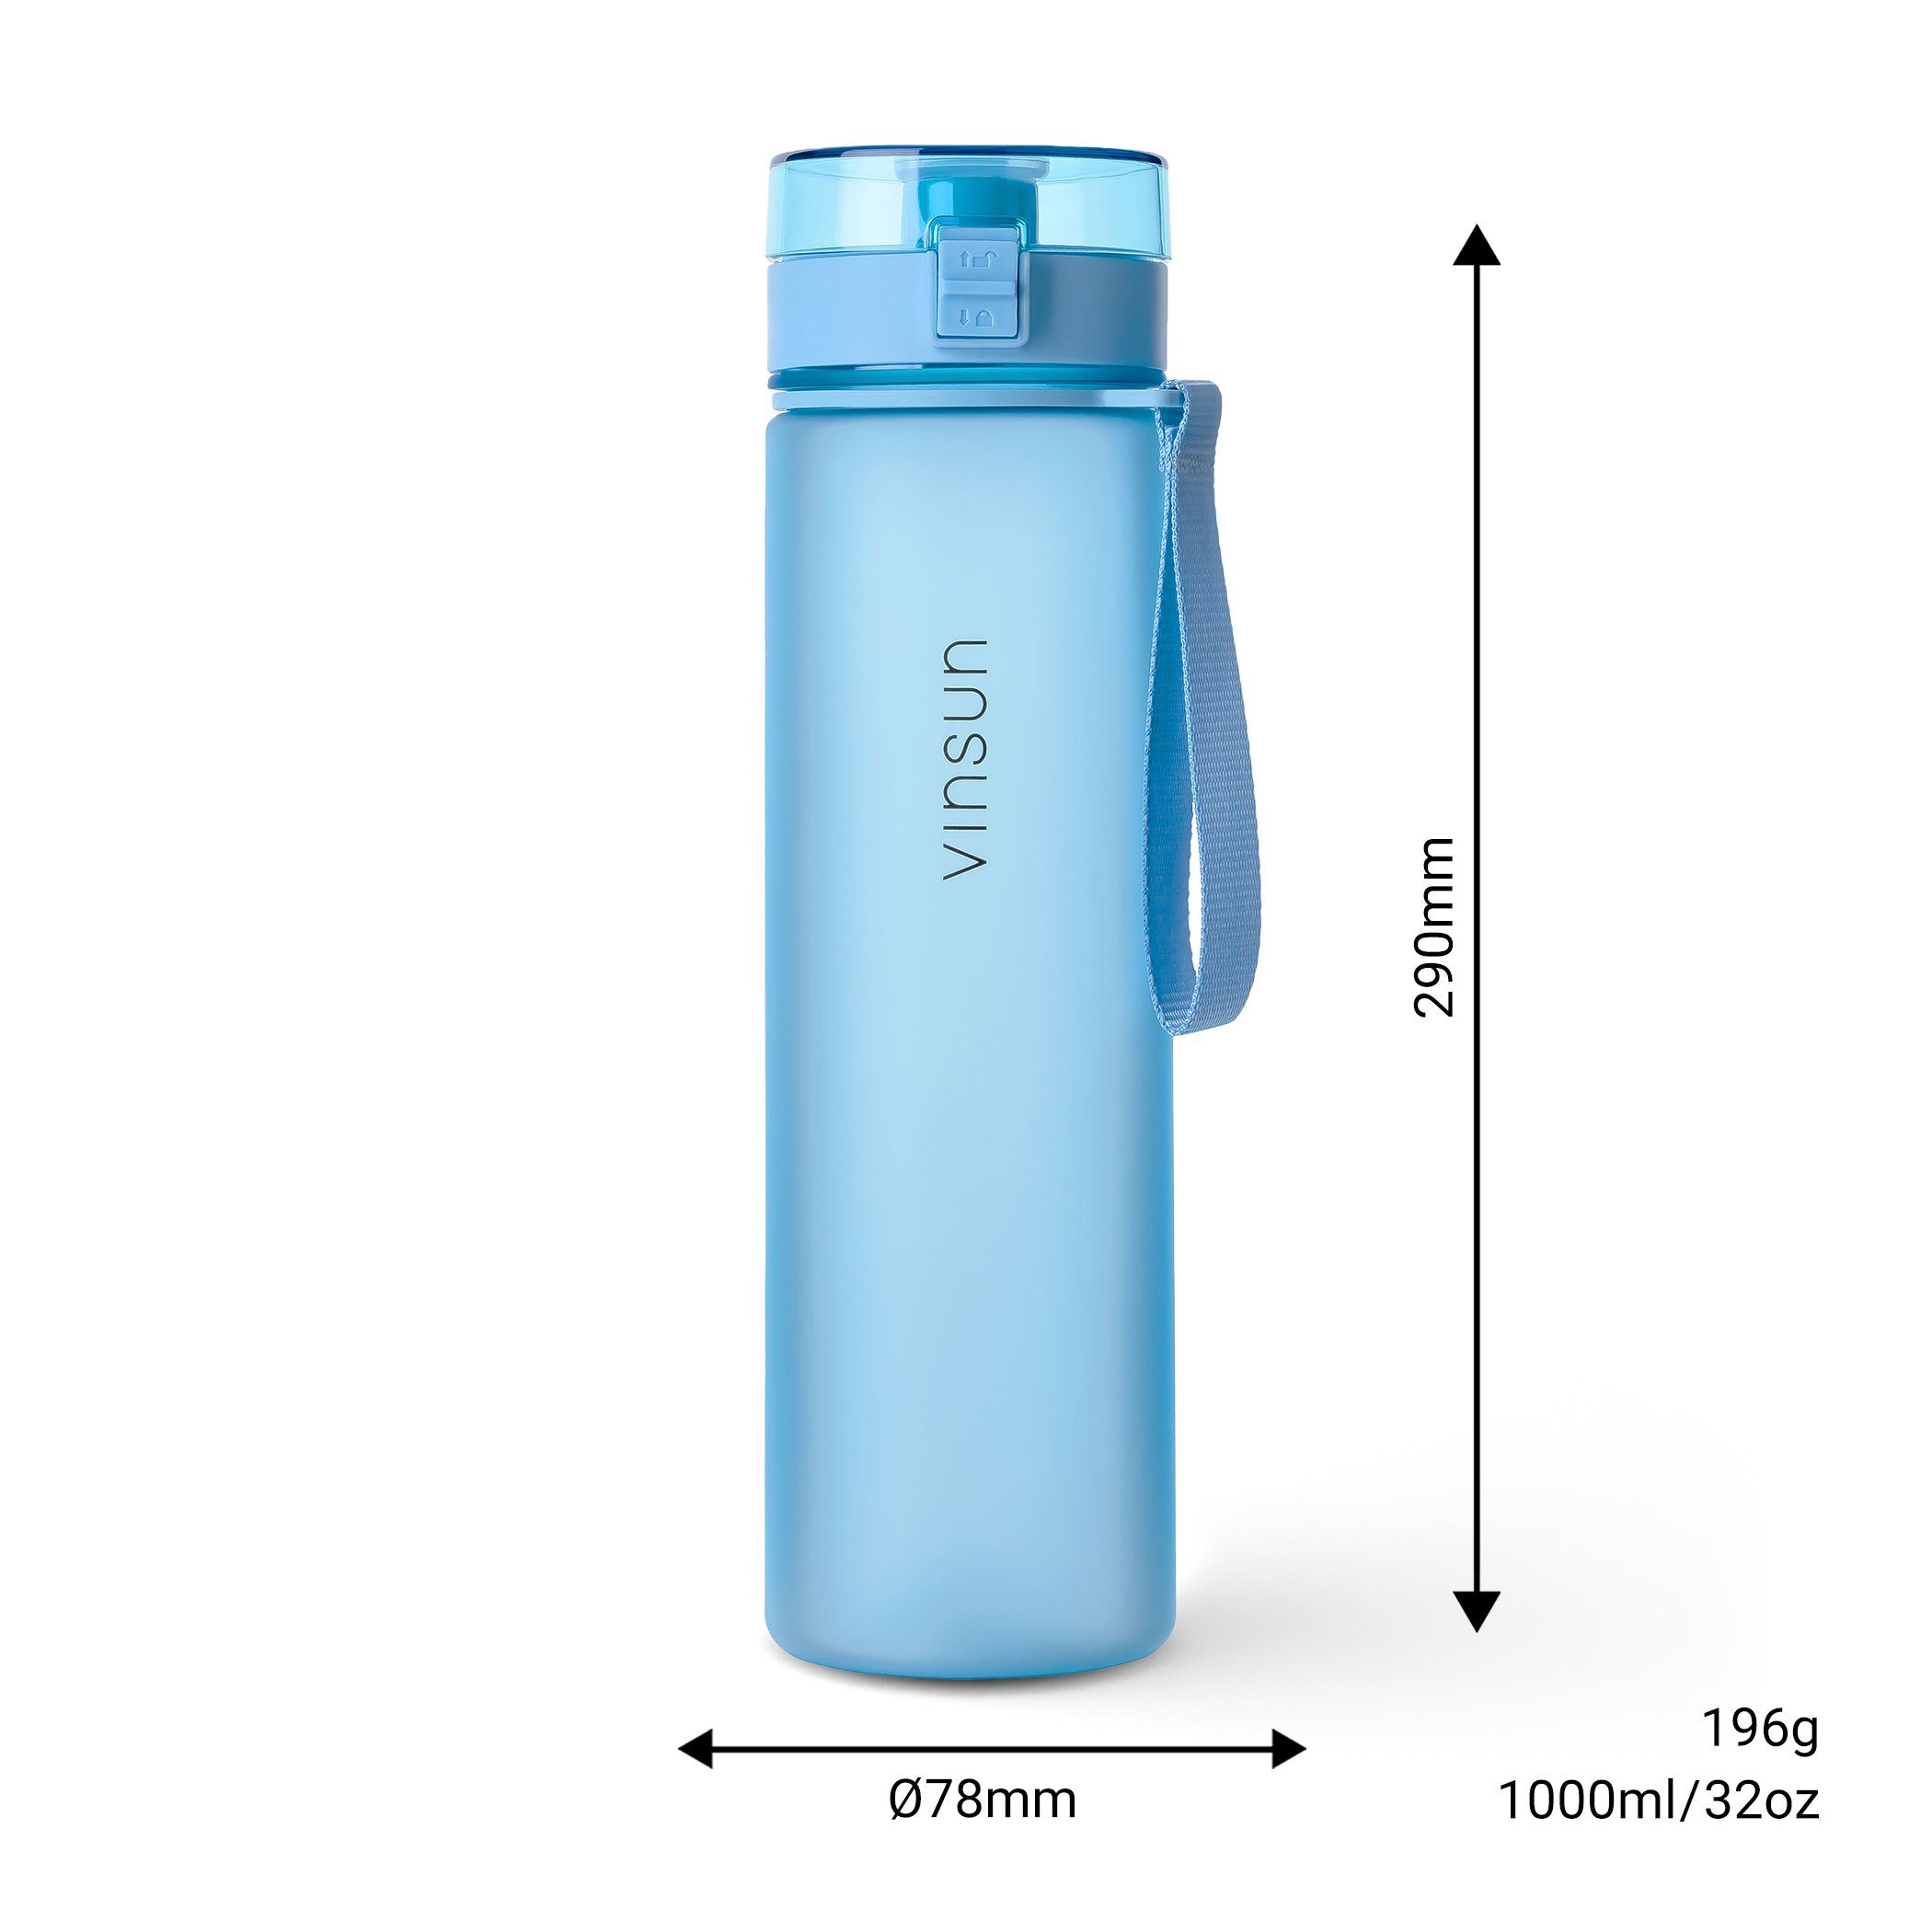 auslaufsicher Hell Geruchs- 1L, frei, Kohlensäure Blau, geeignet, und Geschmacksneutral, - BPA Trinkflasche auslaufsicher Vinsun Trinkflasche Kohlensäure,